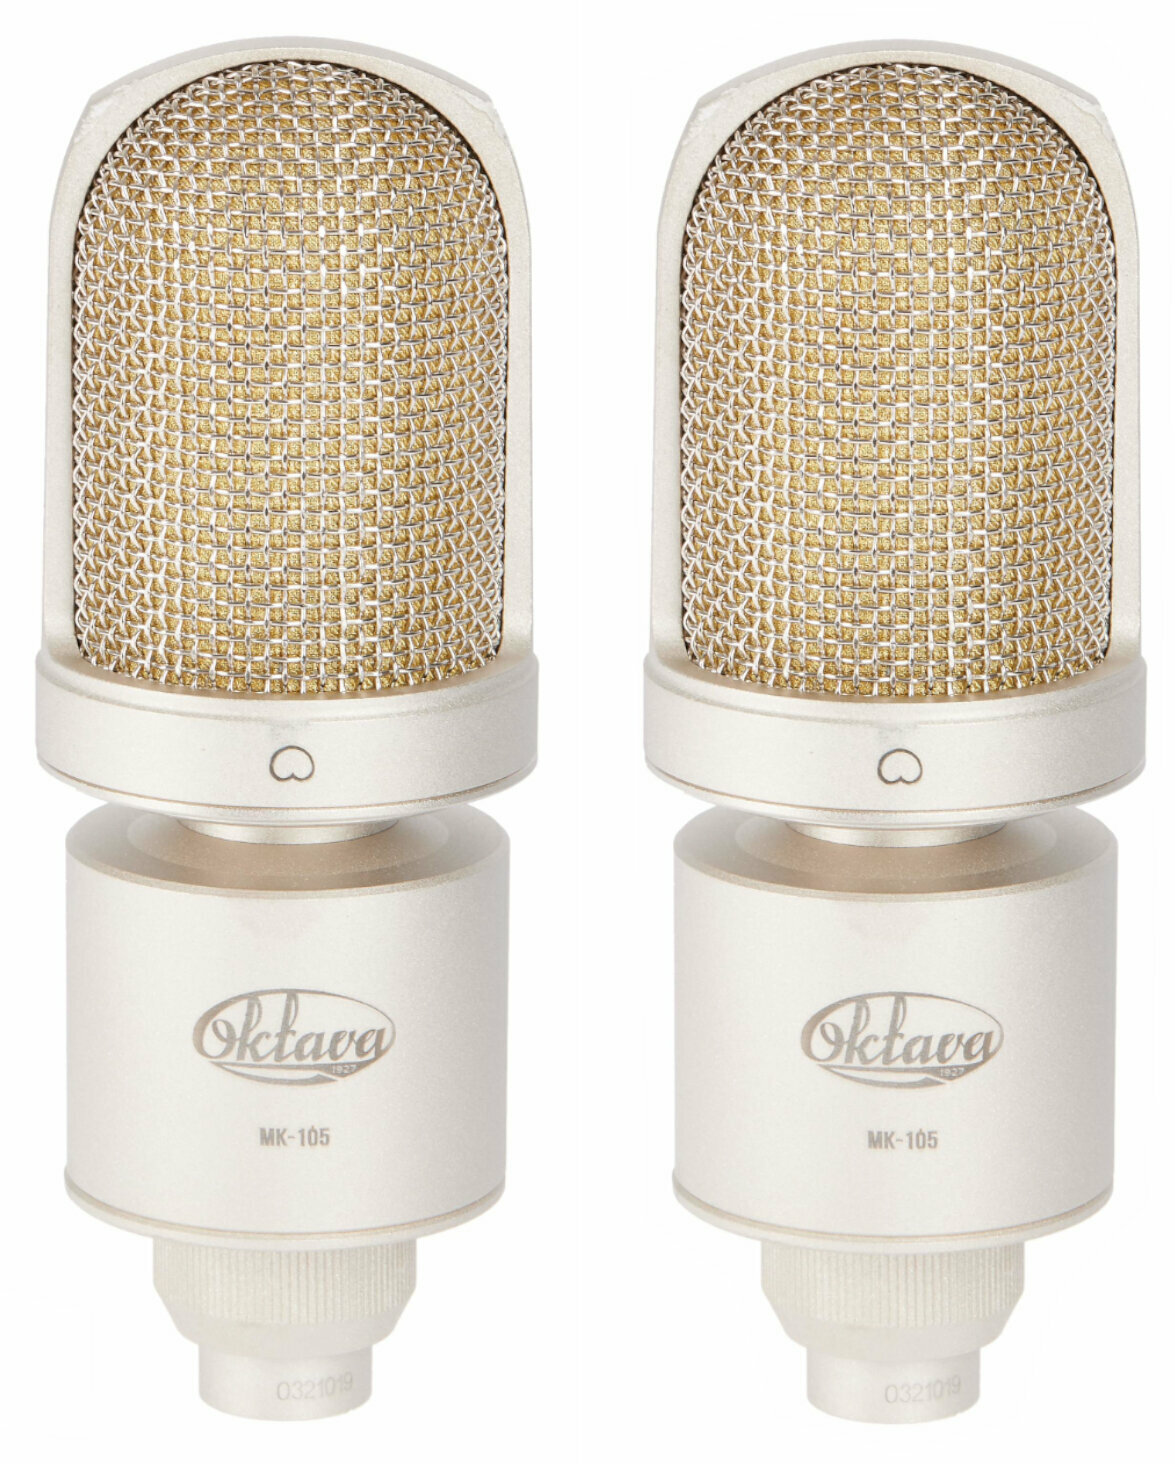 Condensatormicrofoon voor studio Oktava MK-105 stereo pair Condensatormicrofoon voor studio